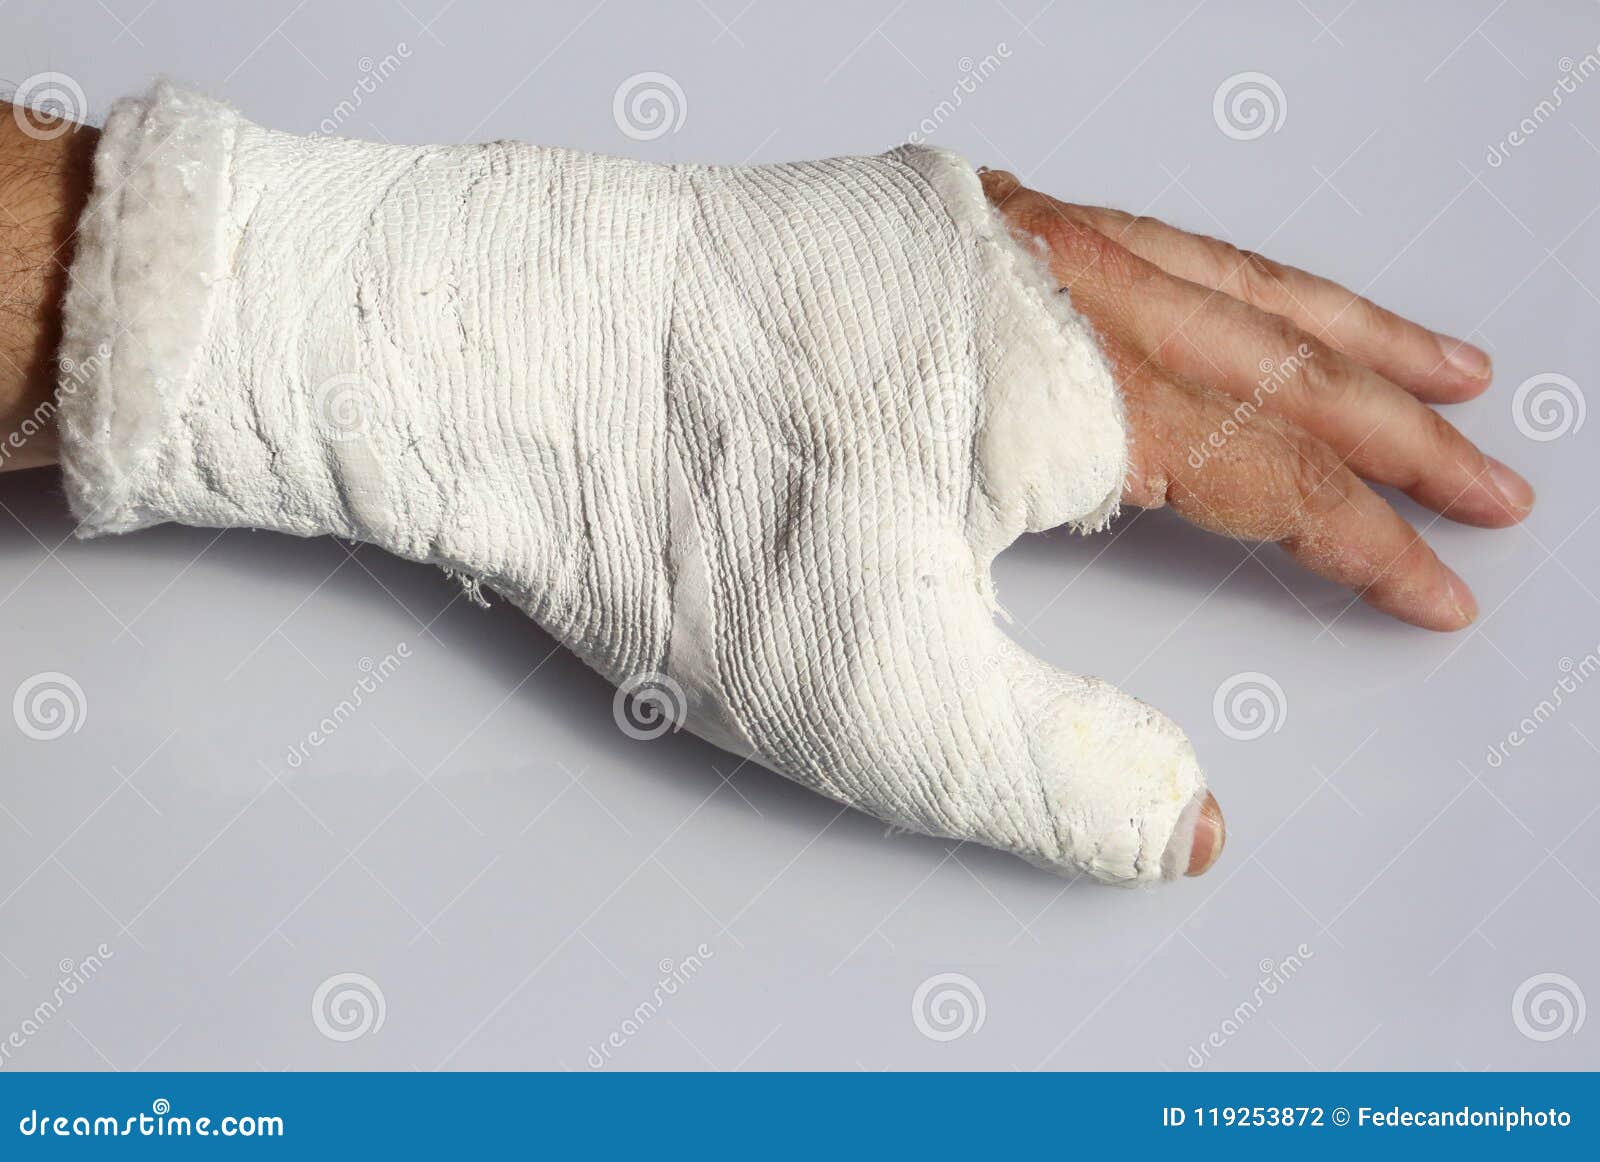 Пальцы после гипса. Гипс при переломе большого пальца руки.